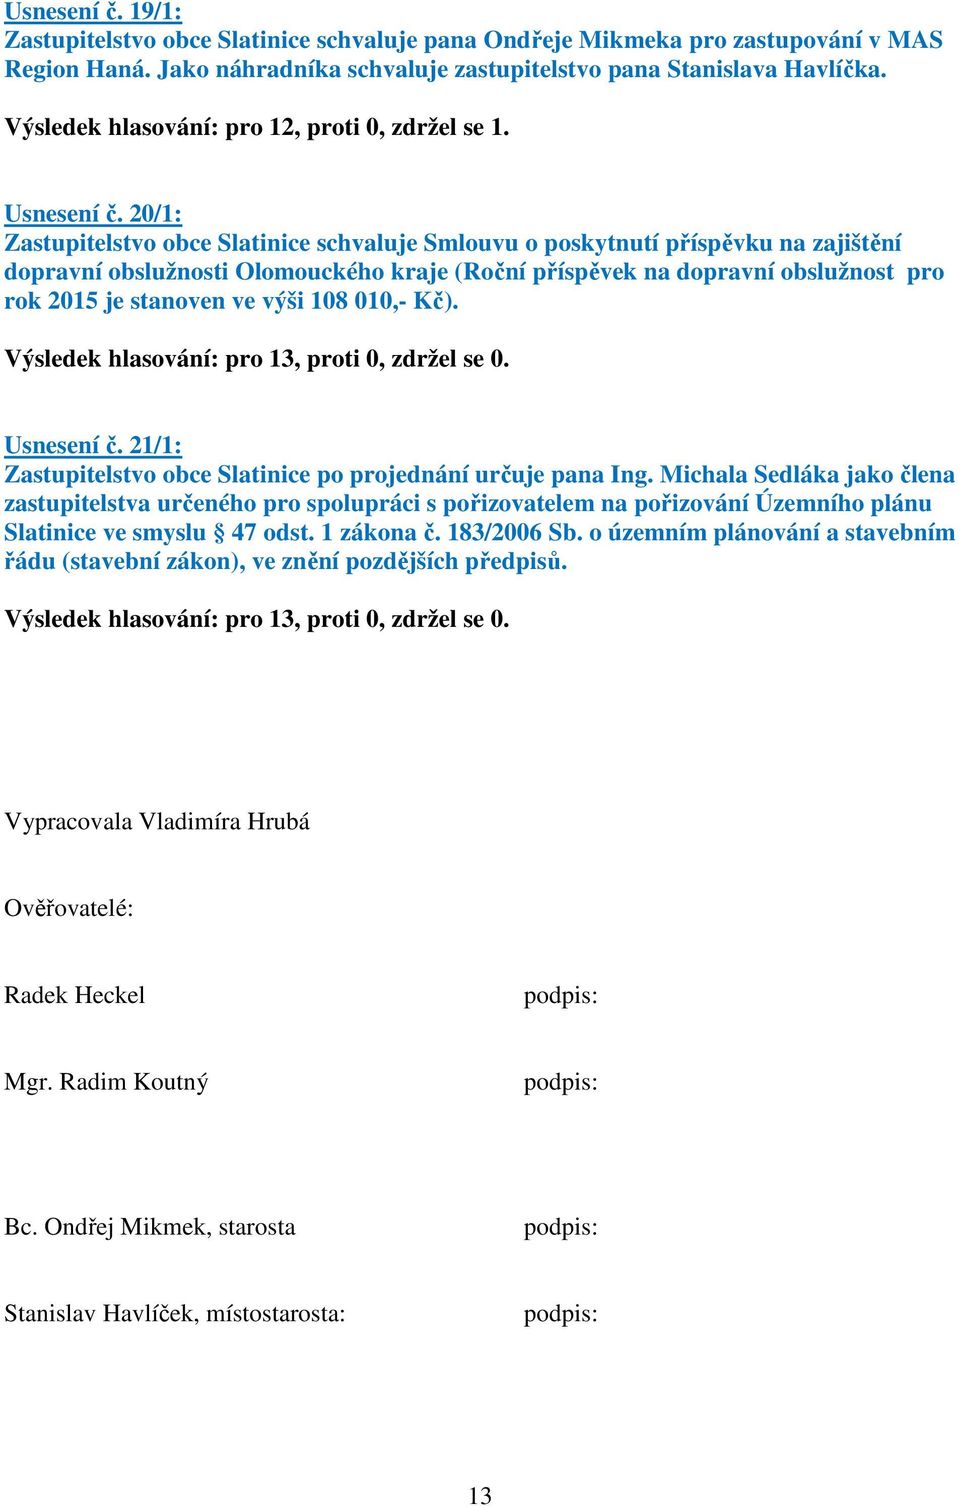 20/1: Zastupitelstvo obce Slatinice schvaluje Smlouvu o poskytnutí příspěvku na zajištění dopravní obslužnosti Olomouckého kraje (Roční příspěvek na dopravní obslužnost pro rok 2015 je stanoven ve